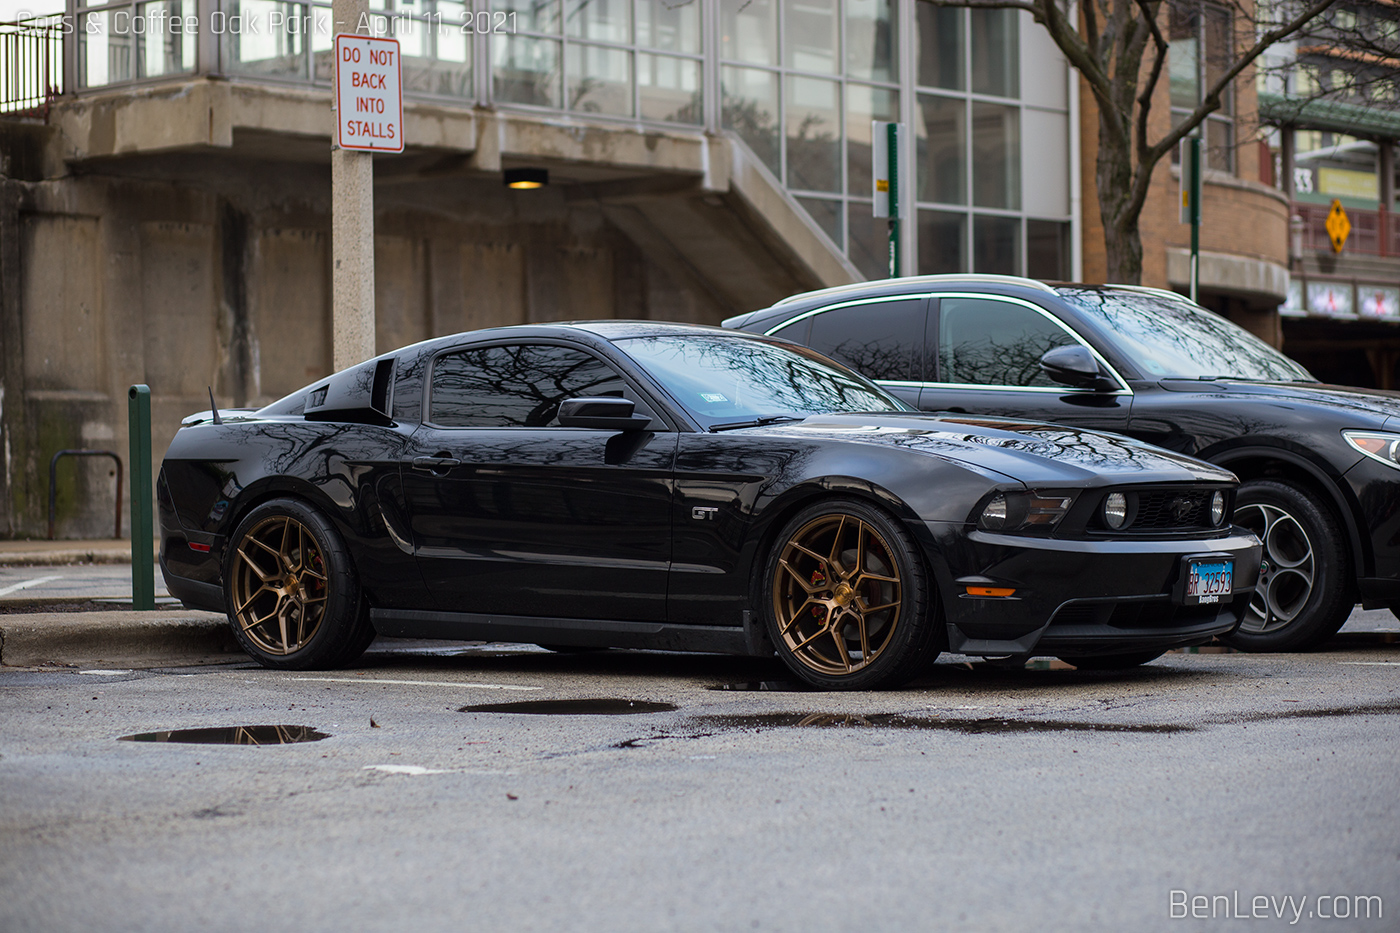 Black S197 Mustang GT on bronze wheels - BenLevy.com